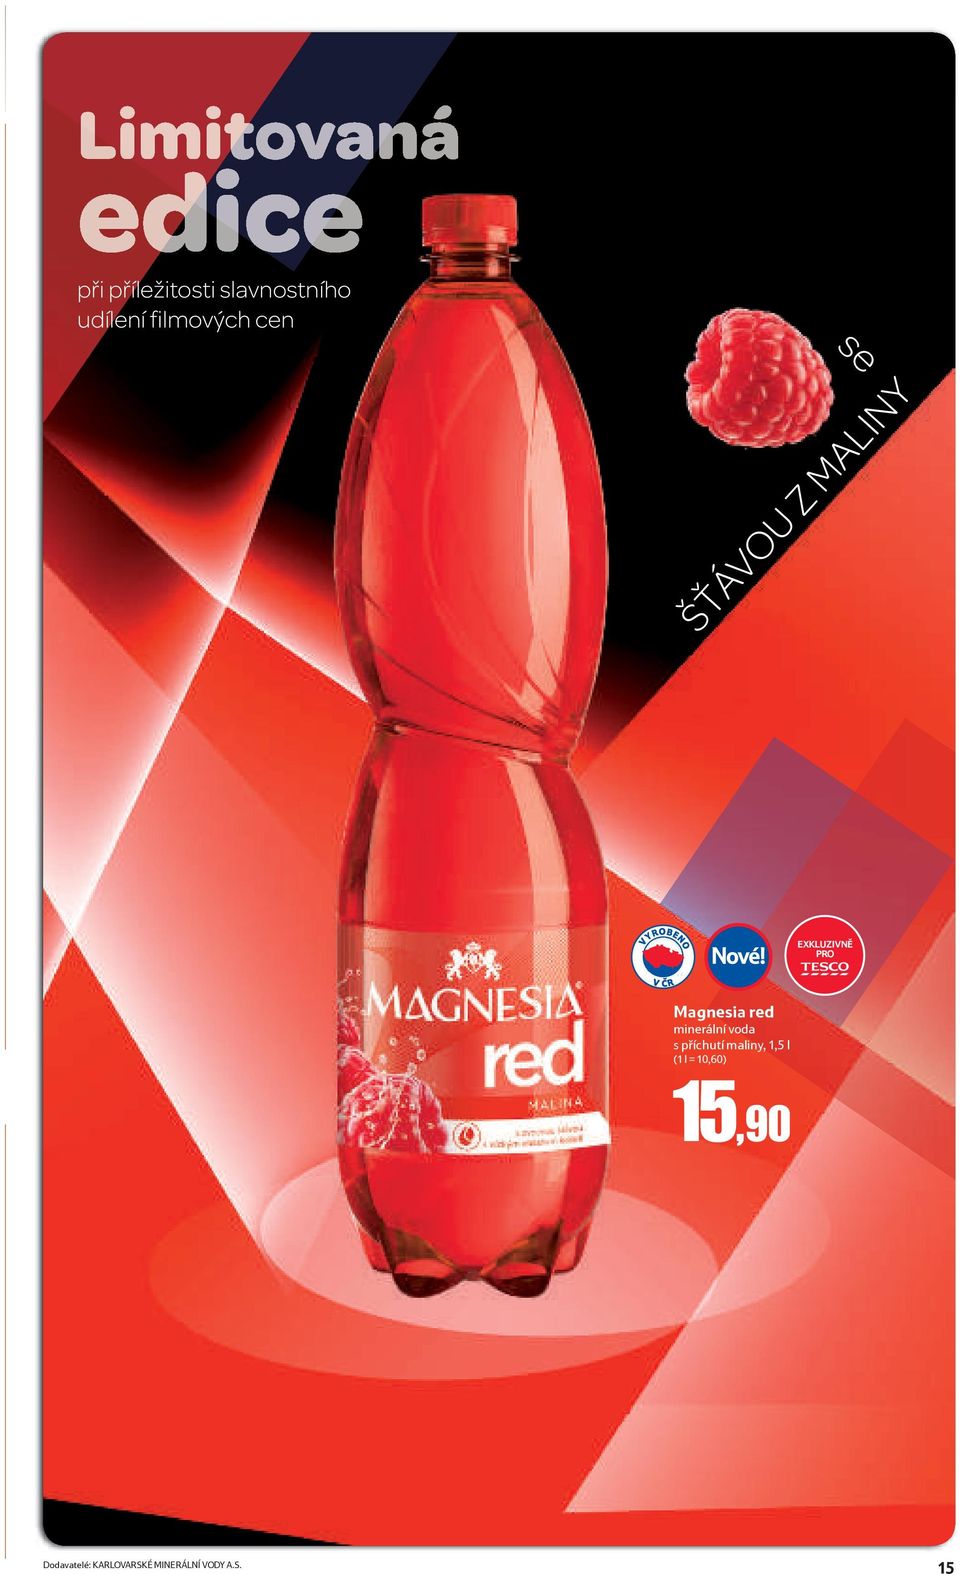 Magnesia red minerální voda s příchutí maliny, 1,5 l (1